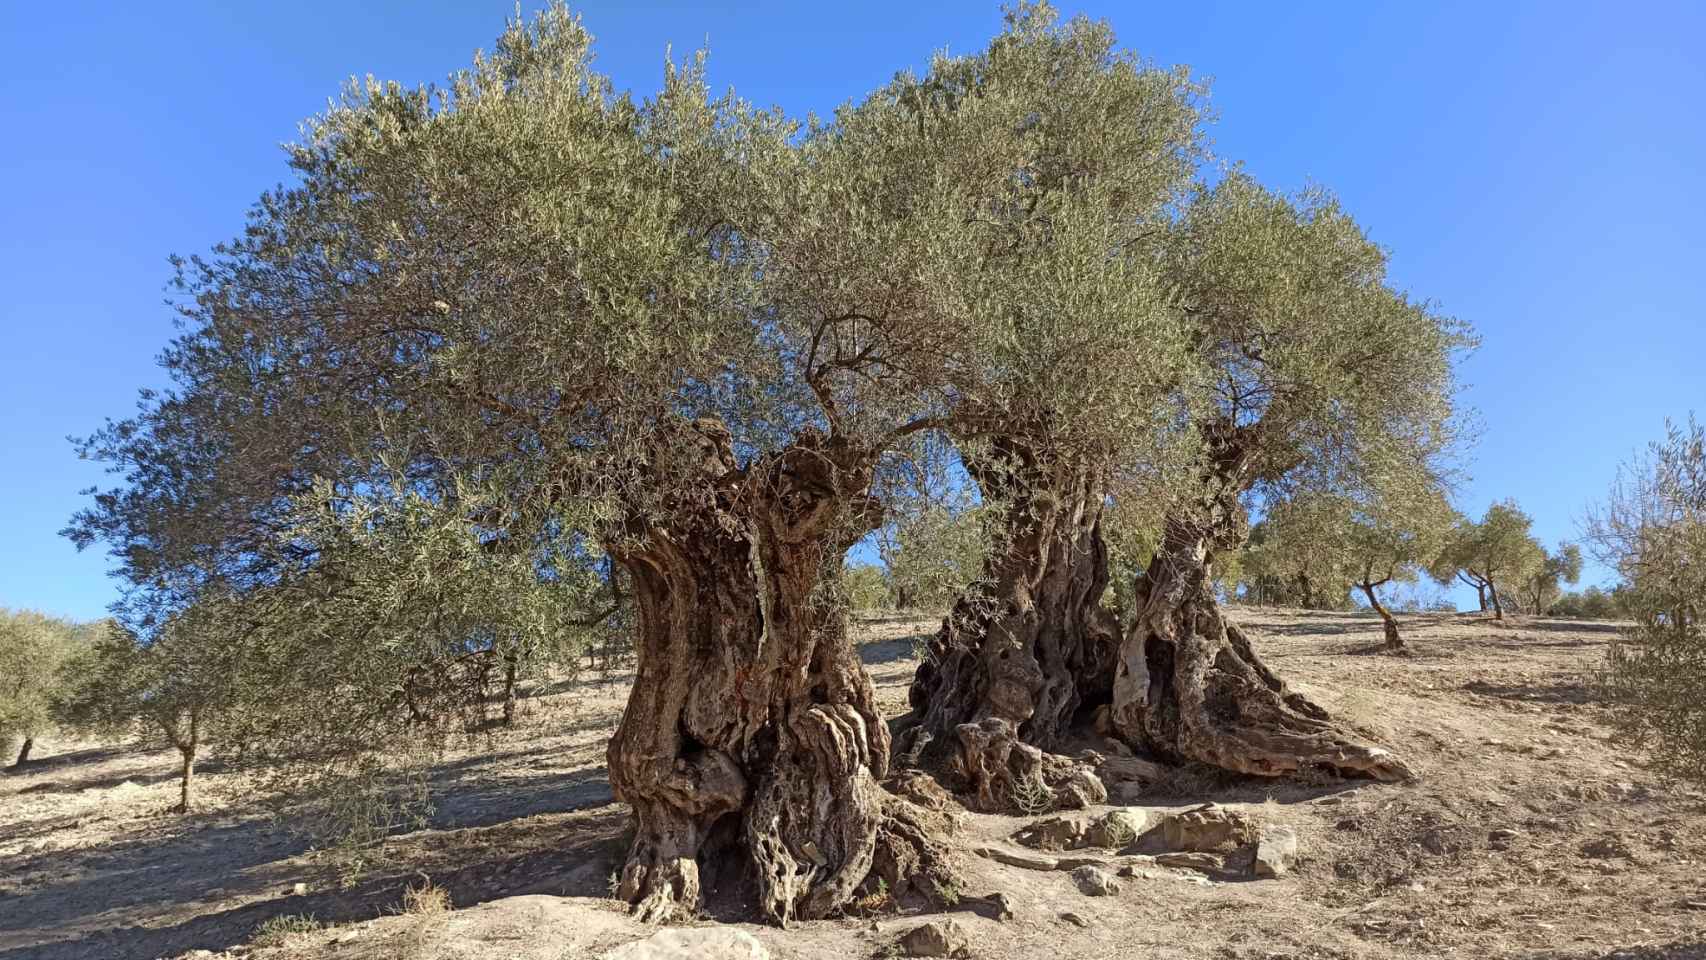 Vista del olivo milenario de Casabermeja